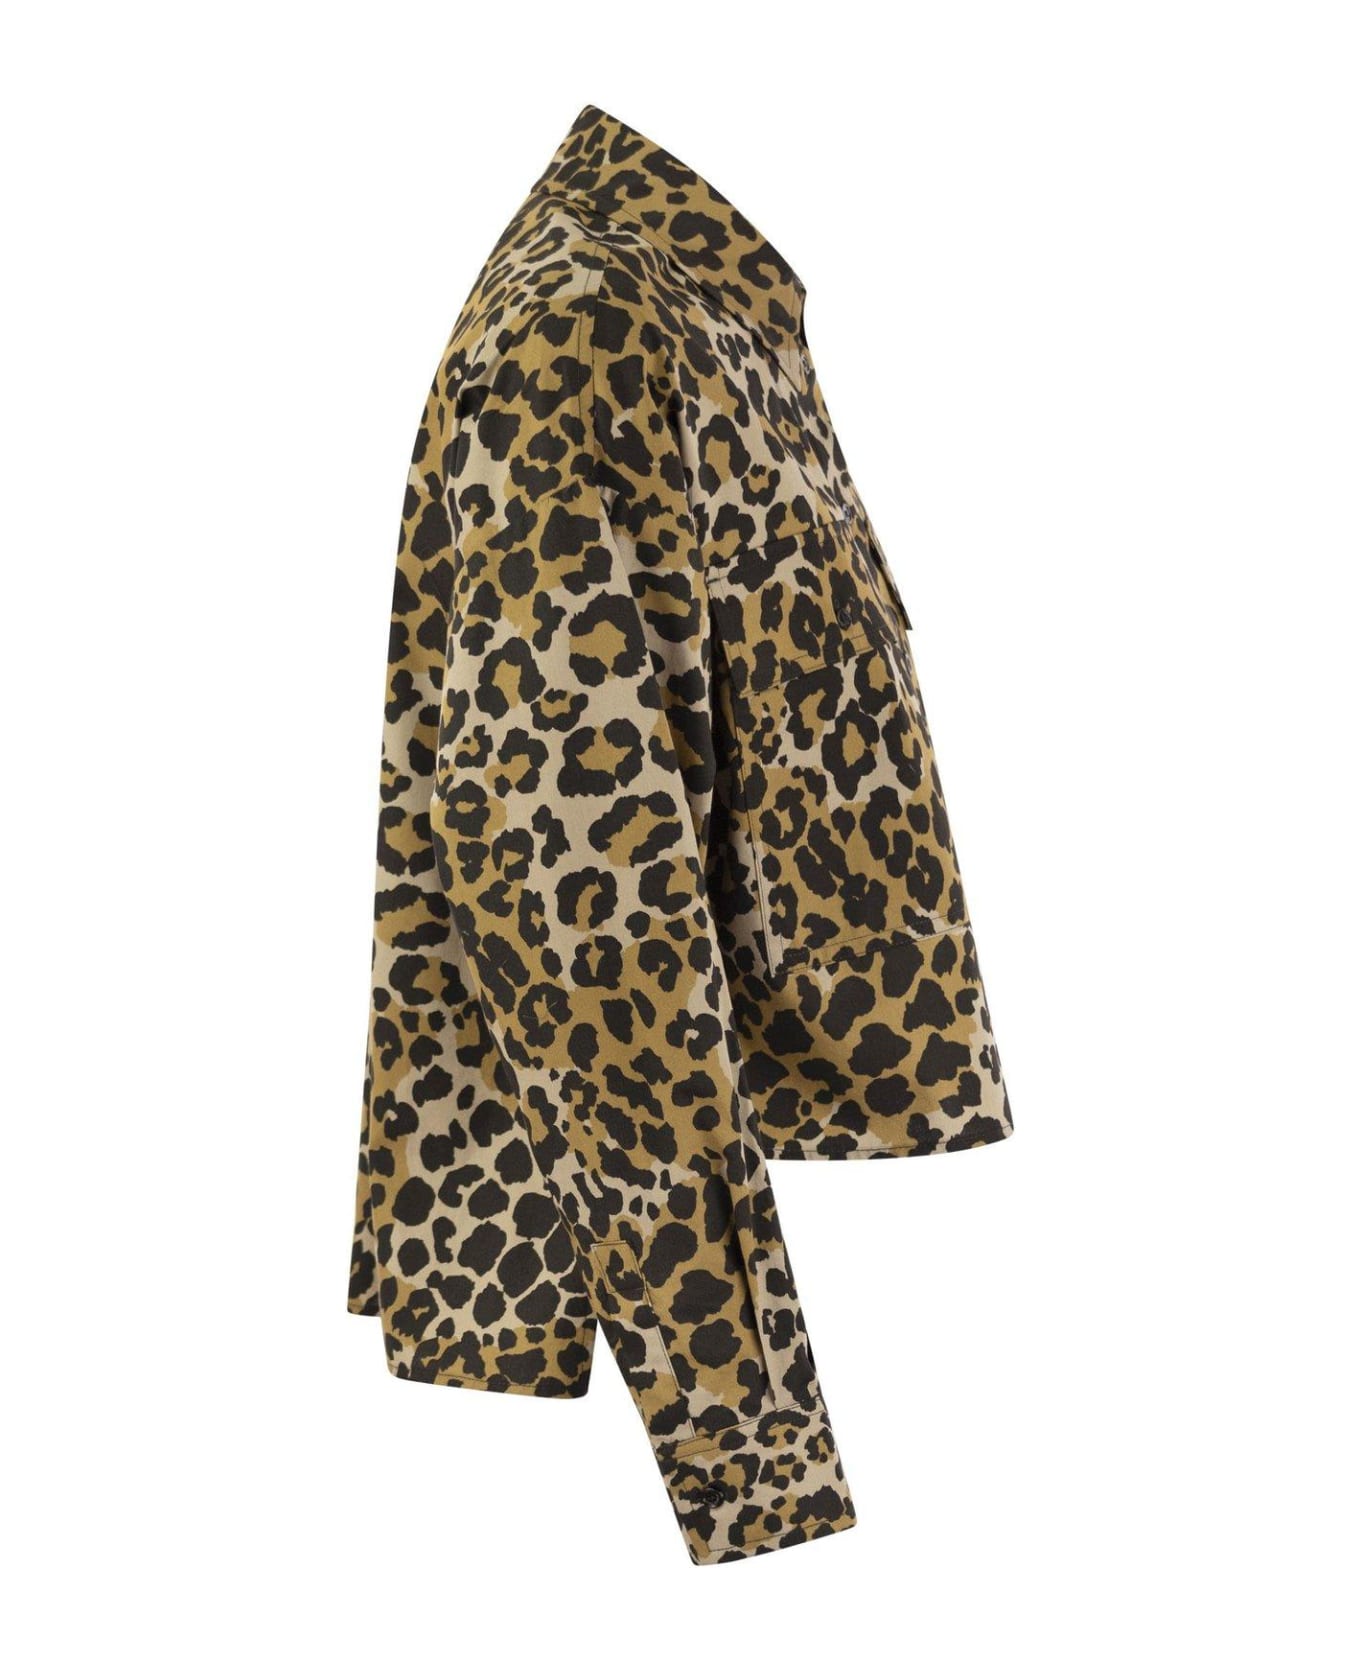 Weekend Max Mara Leopard Printed Long-sleeved Top - Brown